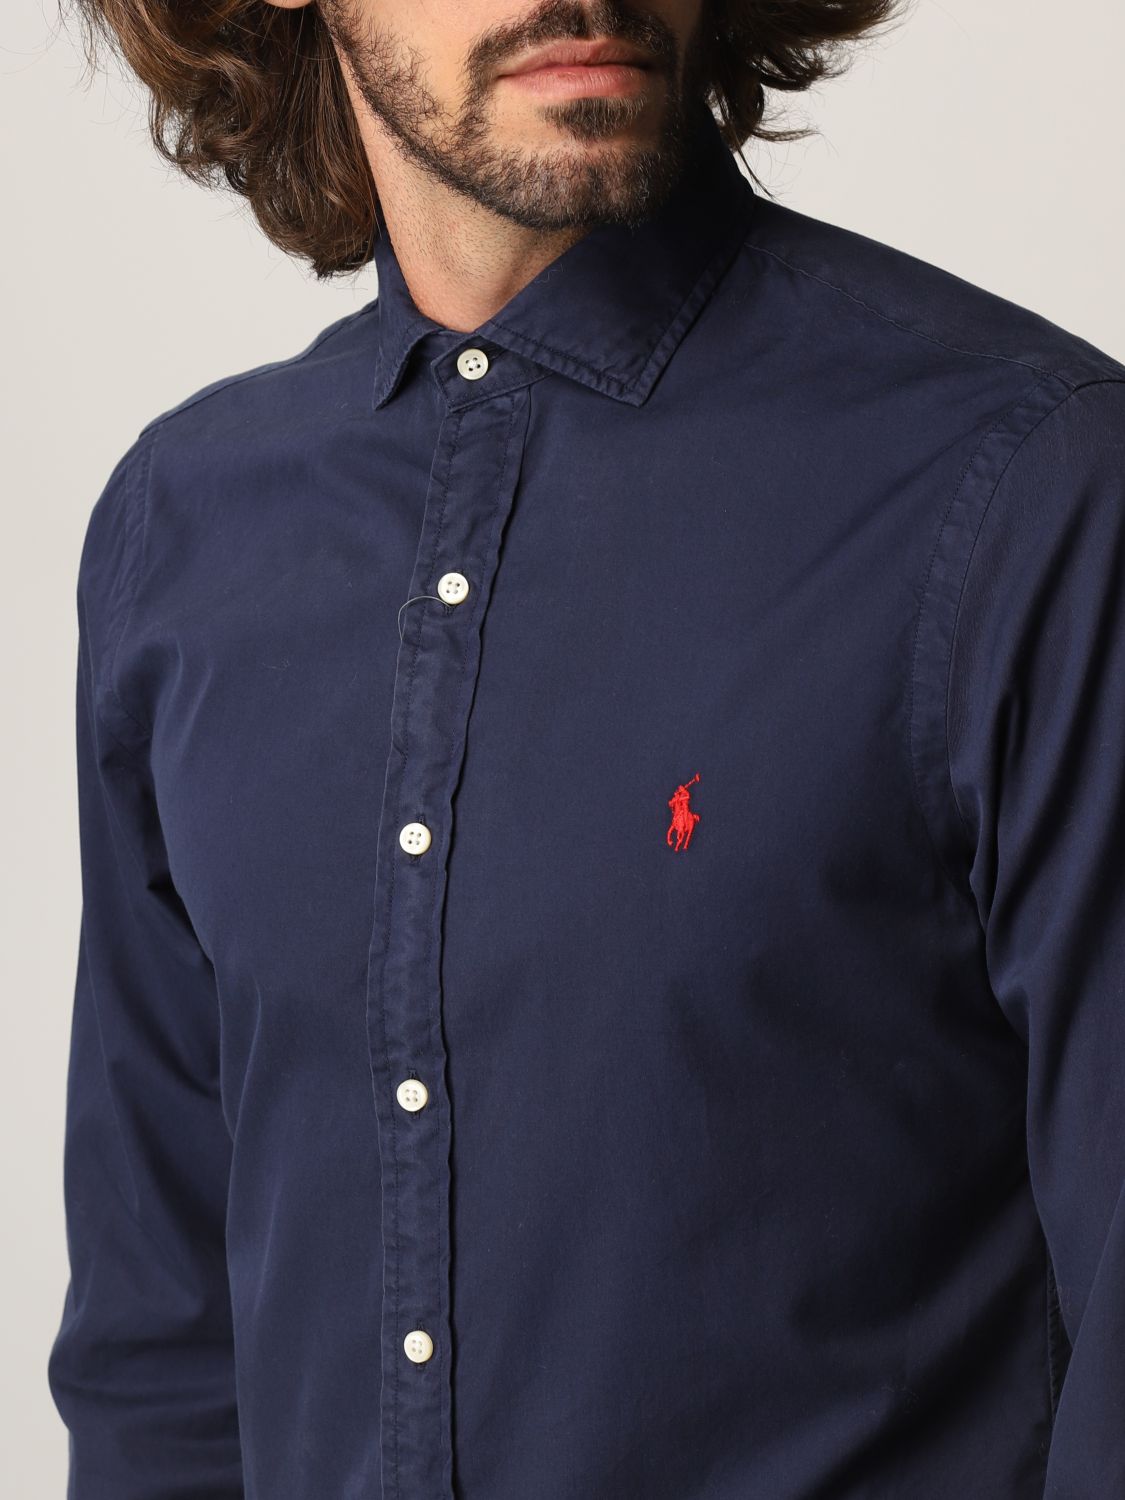 RALPH LAUREN: cotton shirt | Shirt Polo Ralph Lauren Men | Shirt Polo Ralph Lauren 710852728 GIGLIO.COM